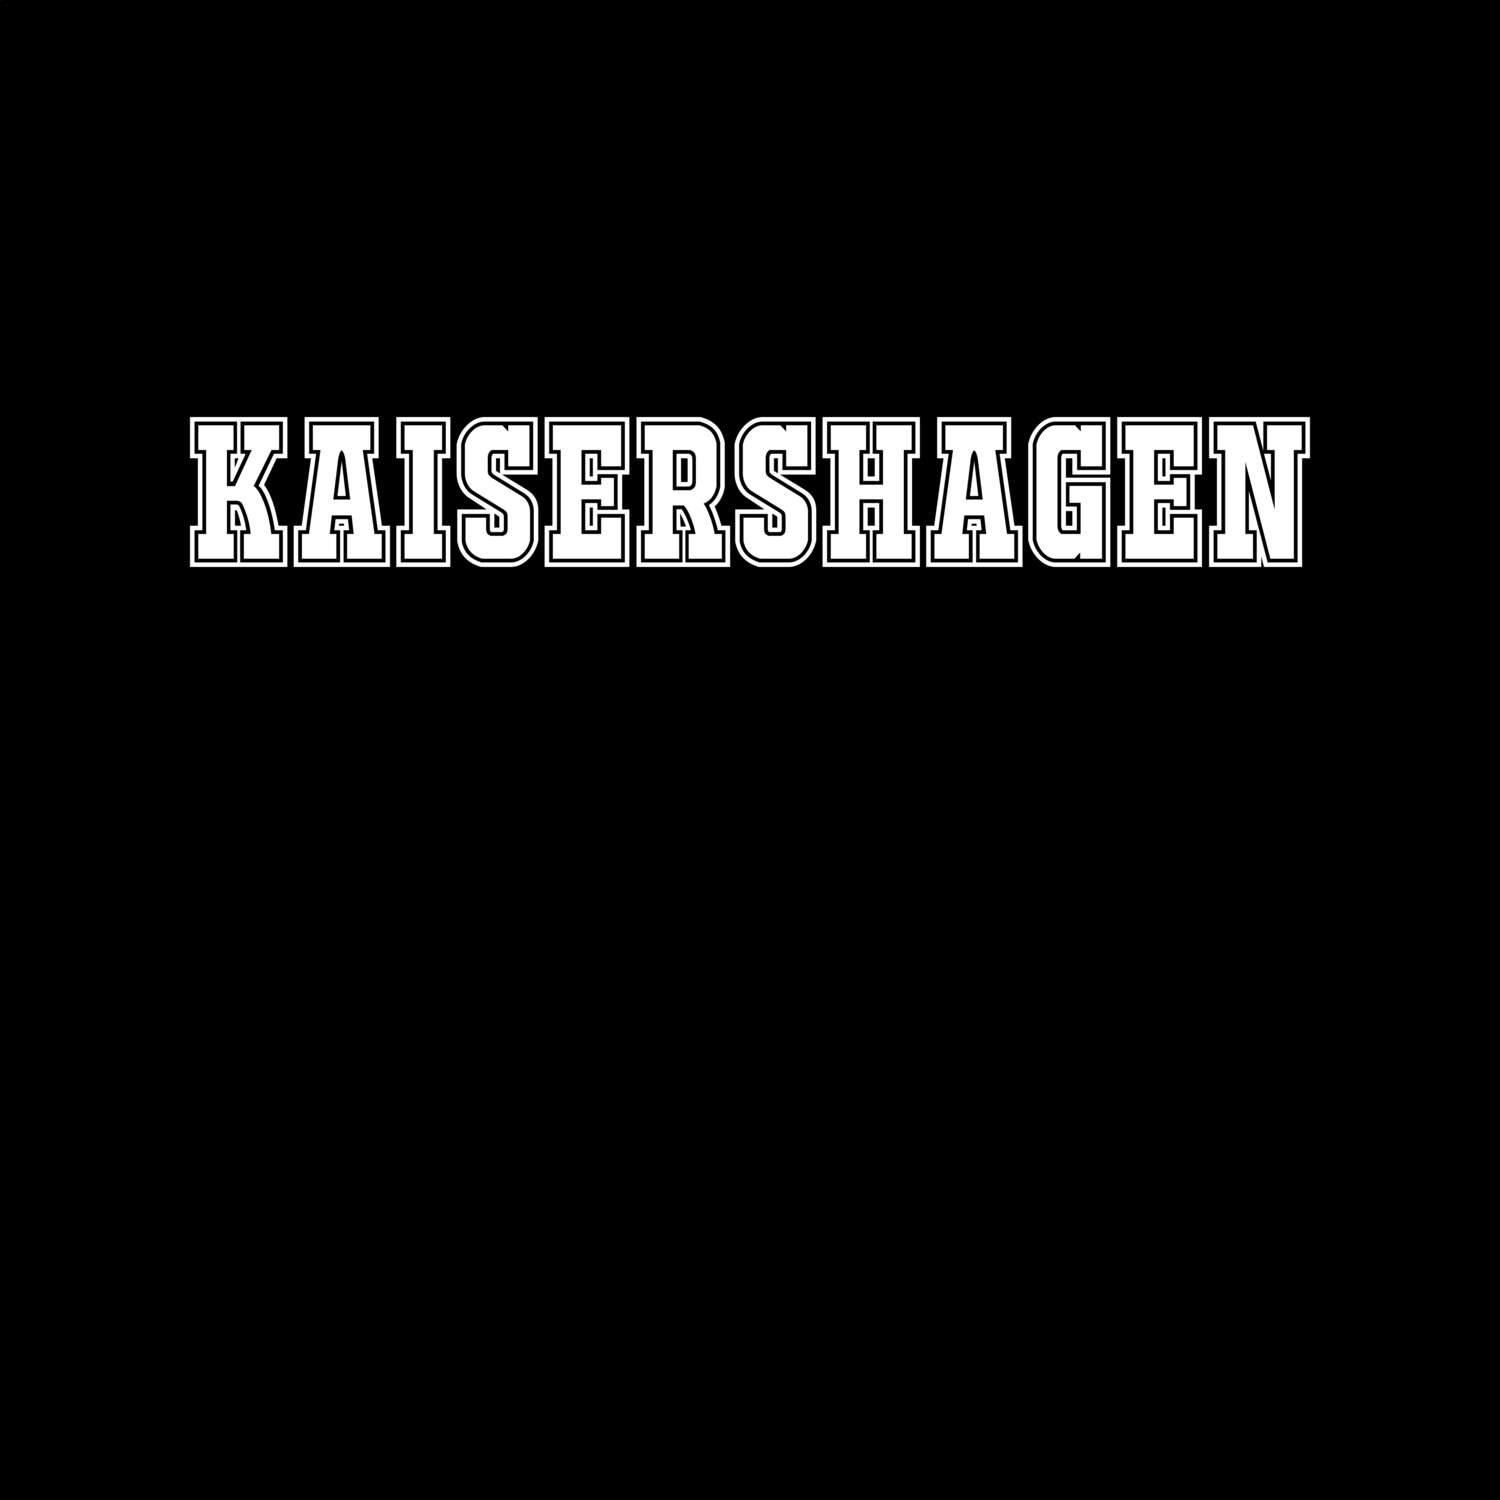 Kaisershagen T-Shirt »Classic«